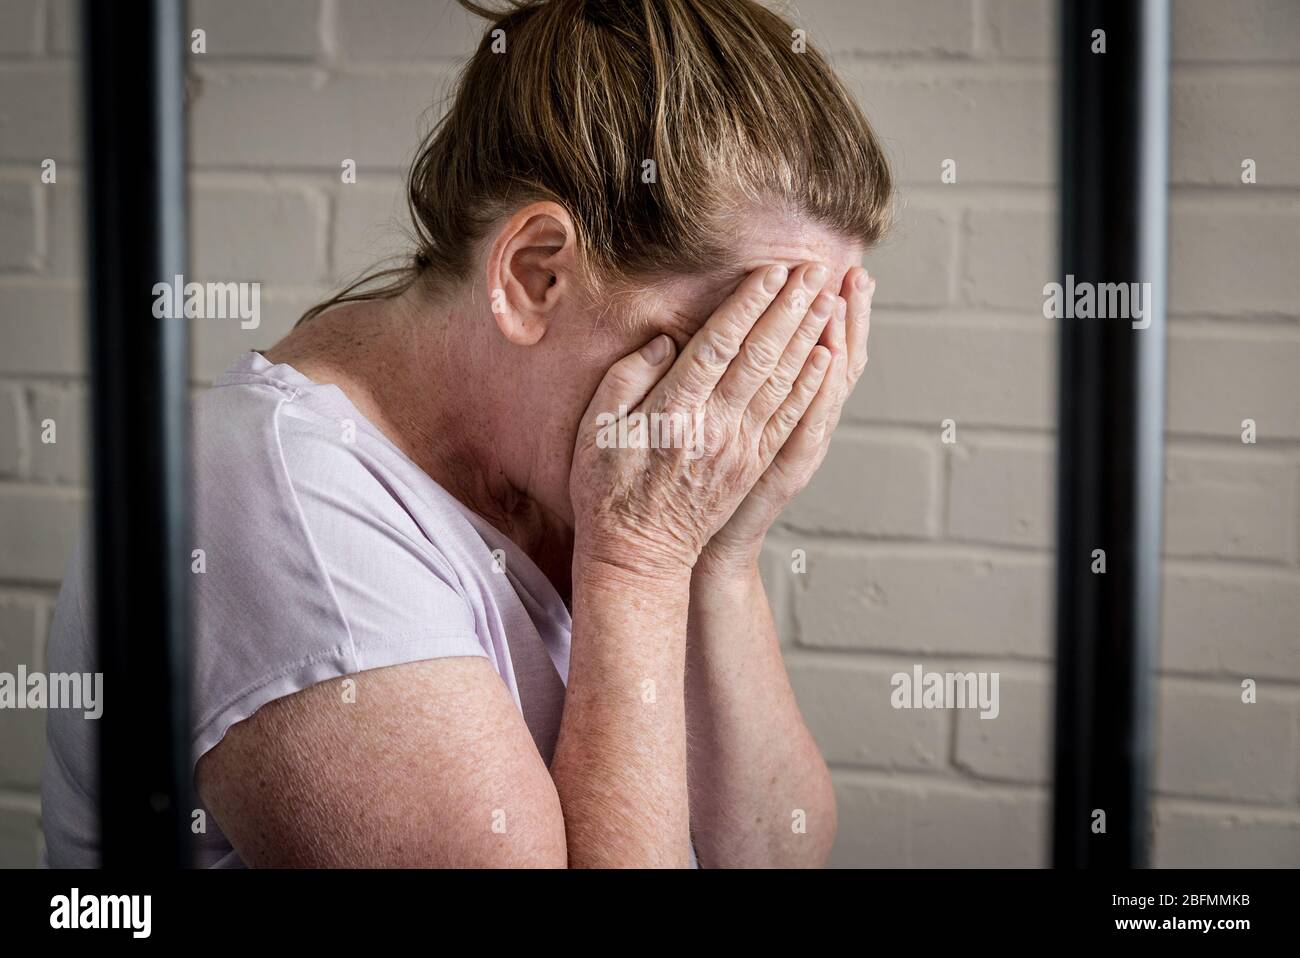 Une femme emprisonnée triste et bouleversée derrière les barreaux dans une prison pour femmes. Image posée par le modèle. Banque D'Images